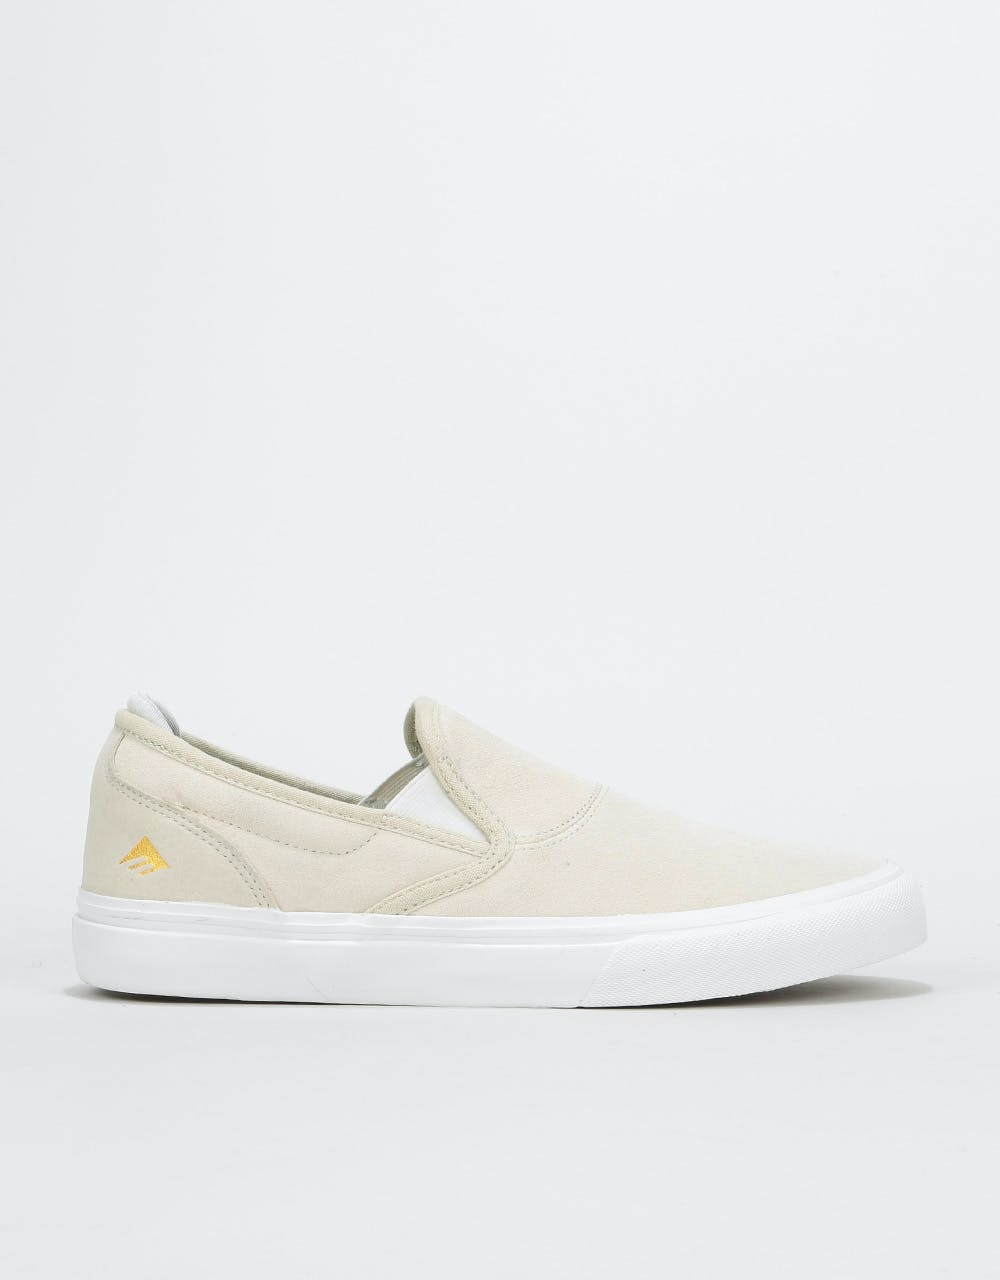 Emerica Wino G6 Slip-On Skate Shoes - White/White